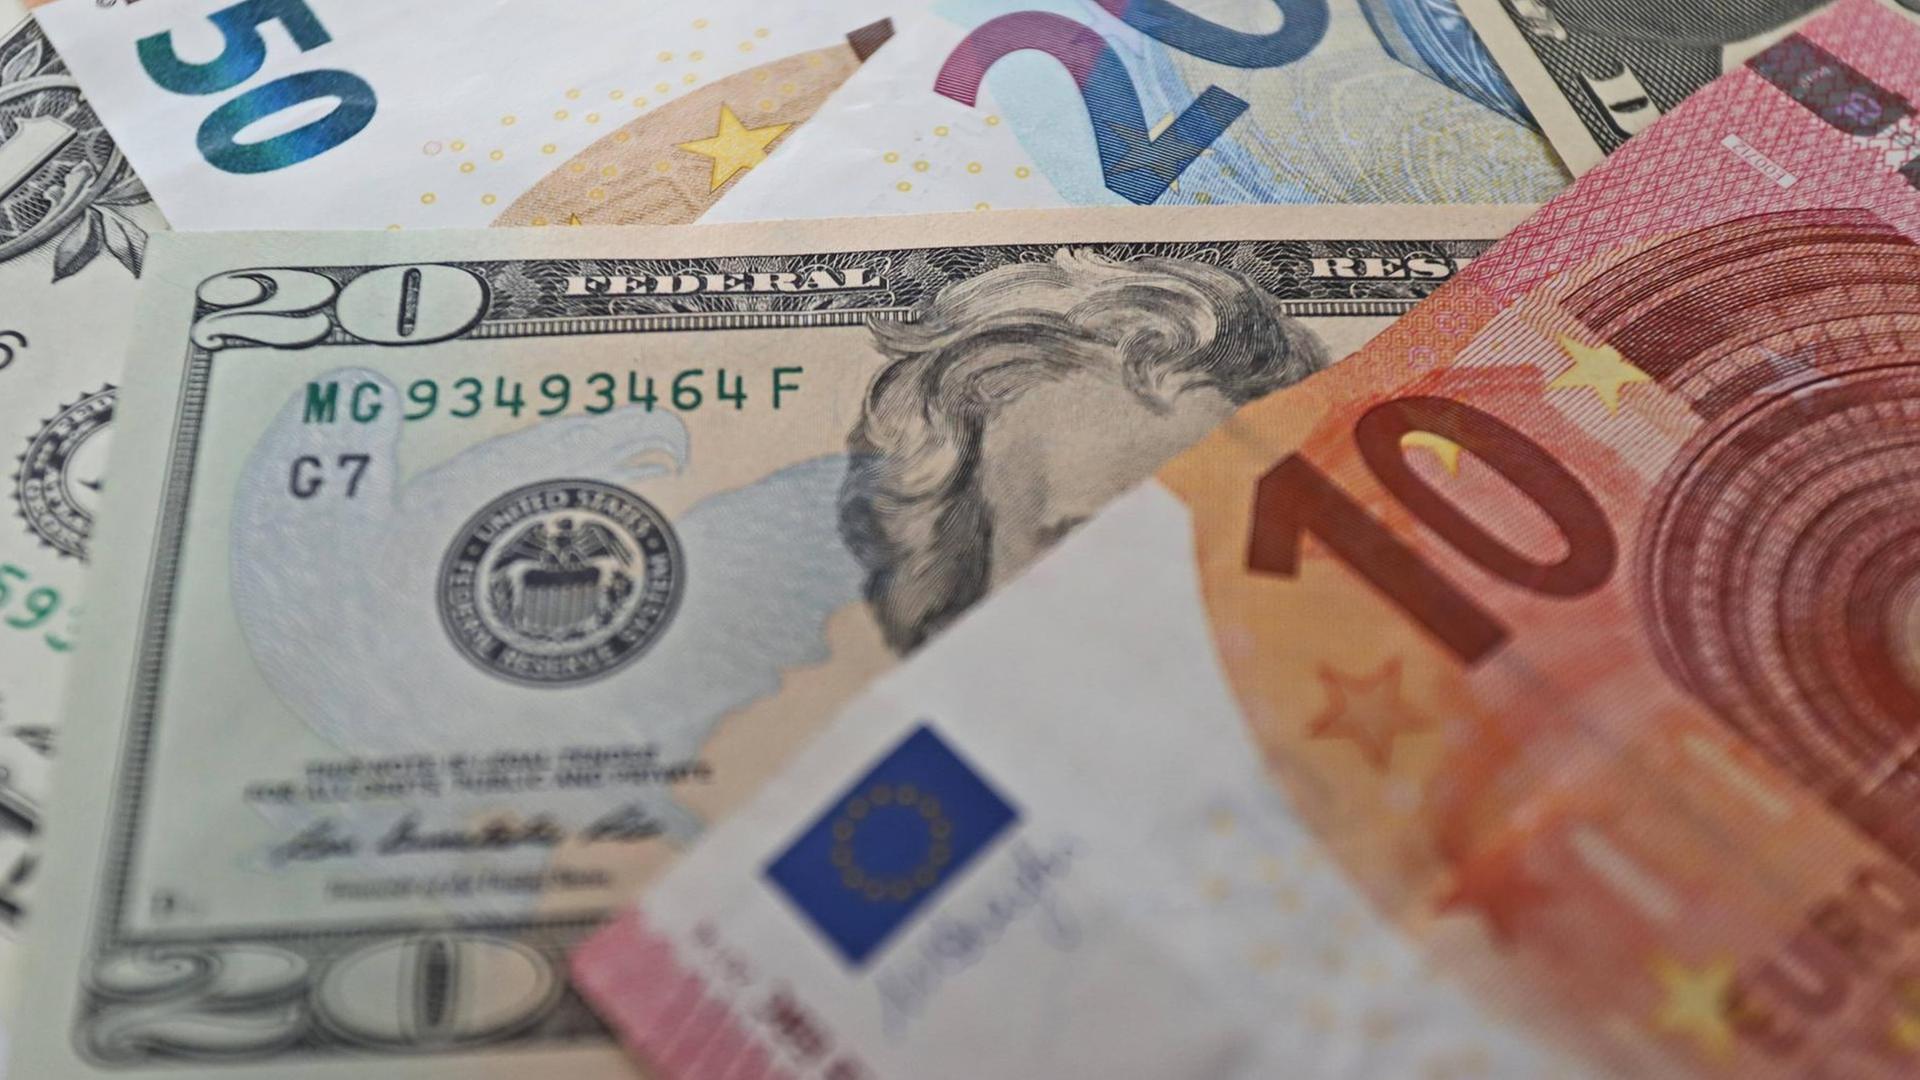 US-Dollar und Euro-Geldscheine liegen zusammen